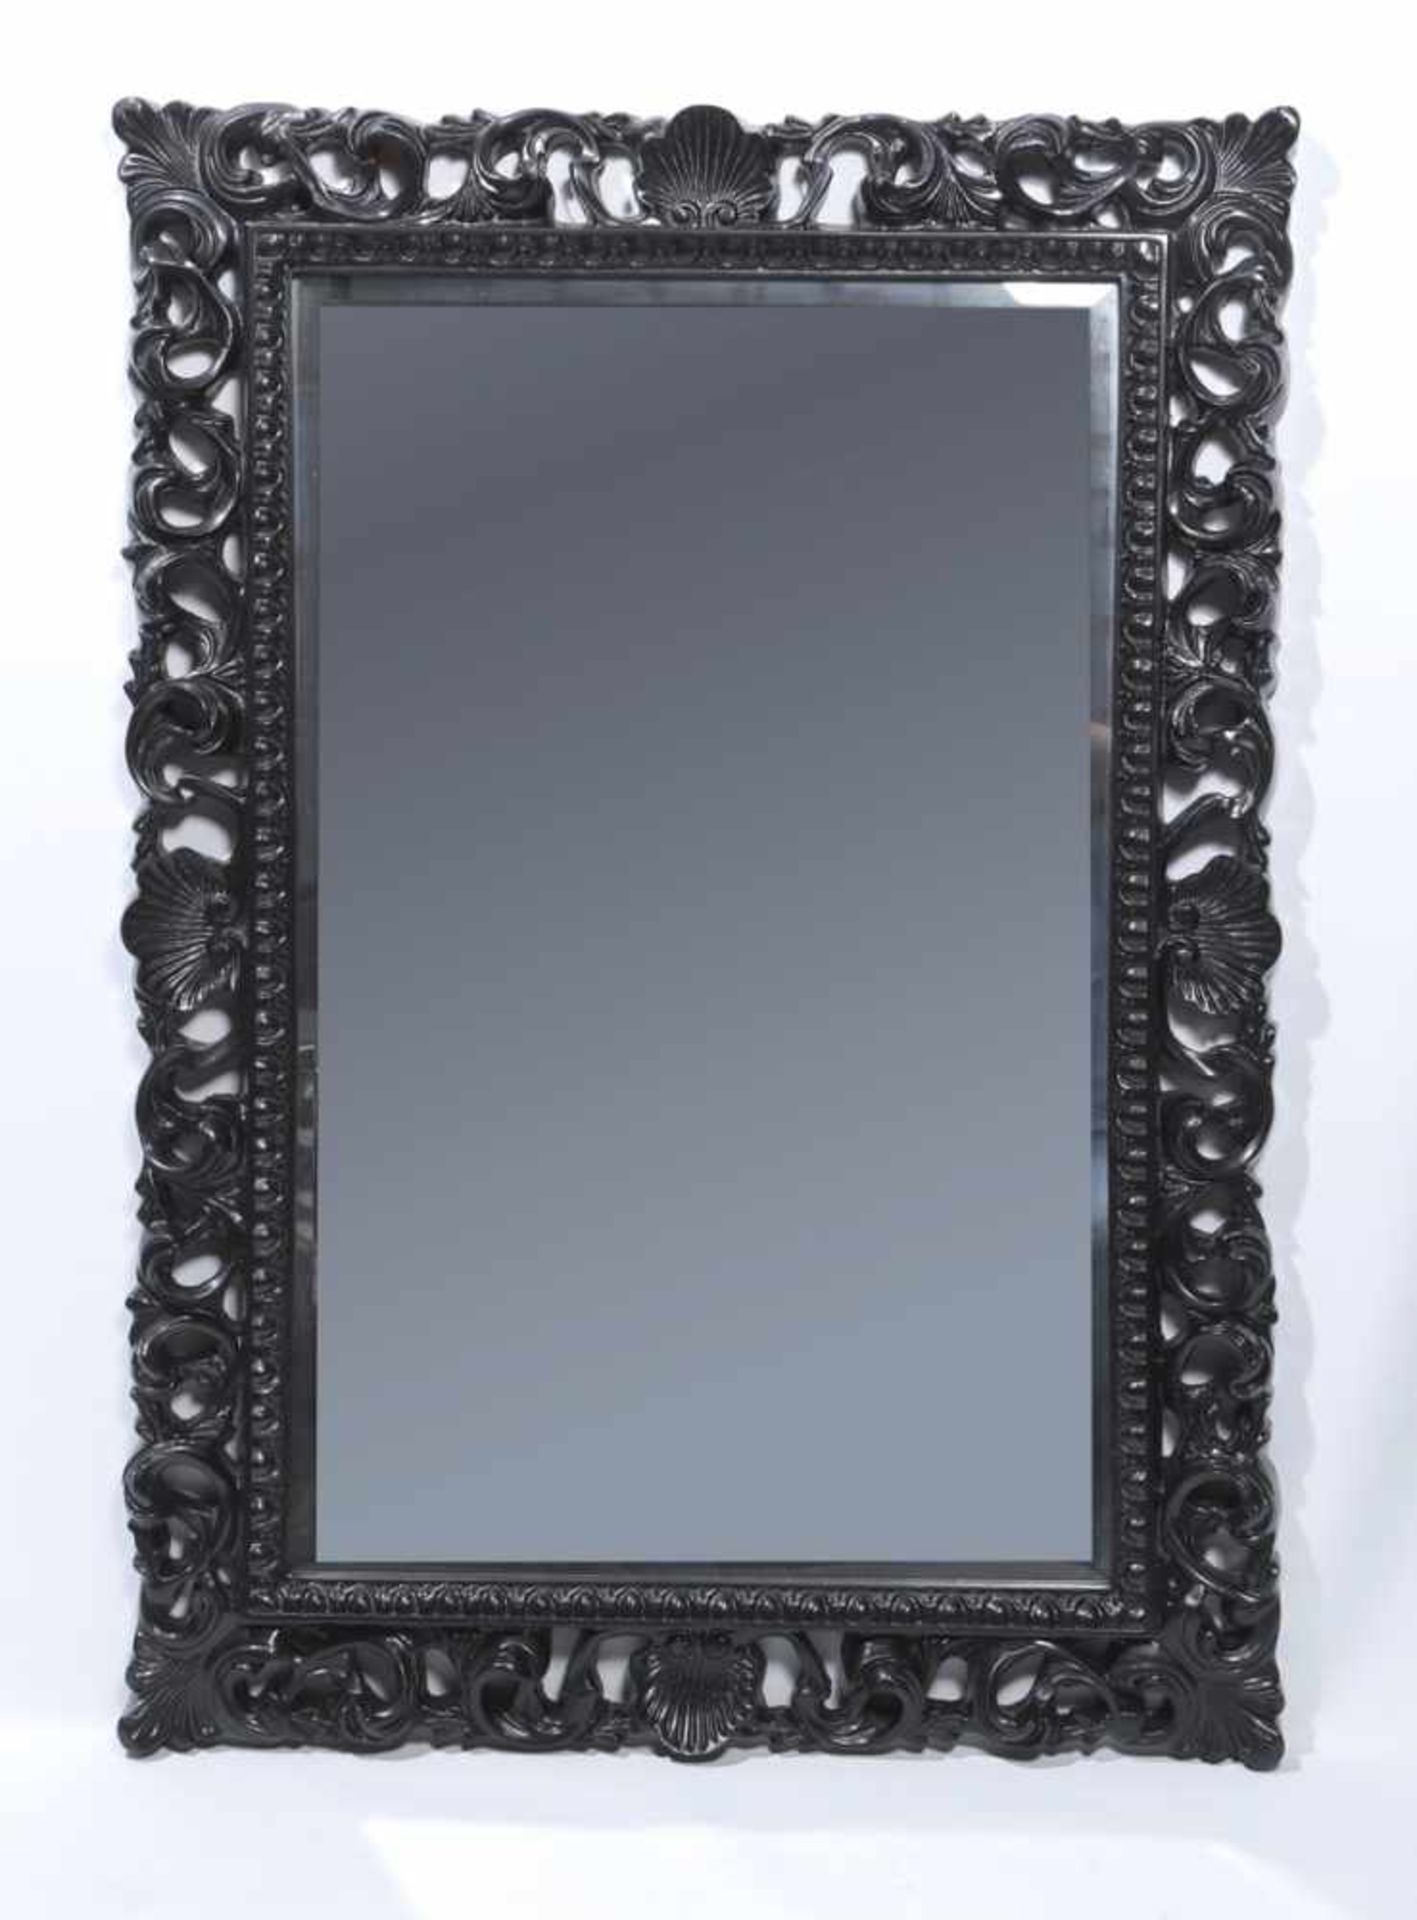 Wandspiegel, neuzeitlich, Gussmasse, ebonisiert, durchbrochen gearbeitet,Facette-Spiegelglas, 106